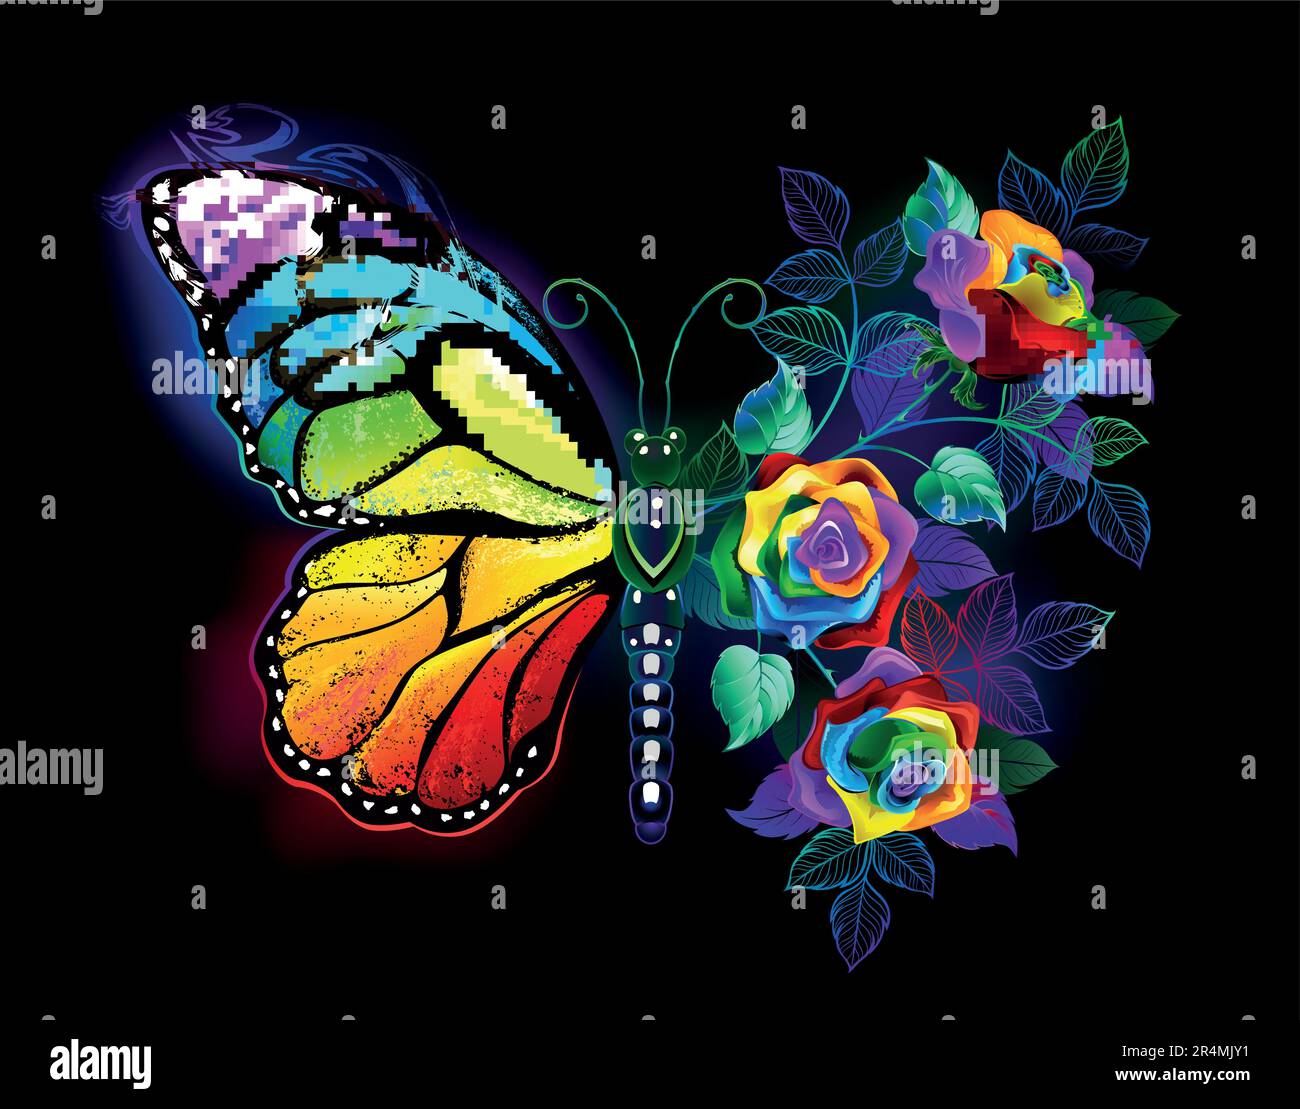 Regenbogen, leuchtender, kunstvoll gemalter Monarch-Schmetterling mit schillerndem Strauß, leuchtenden, leuchtenden Rosen auf schwarzem Hintergrund. Regenbogen-Schmetterling Stock Vektor